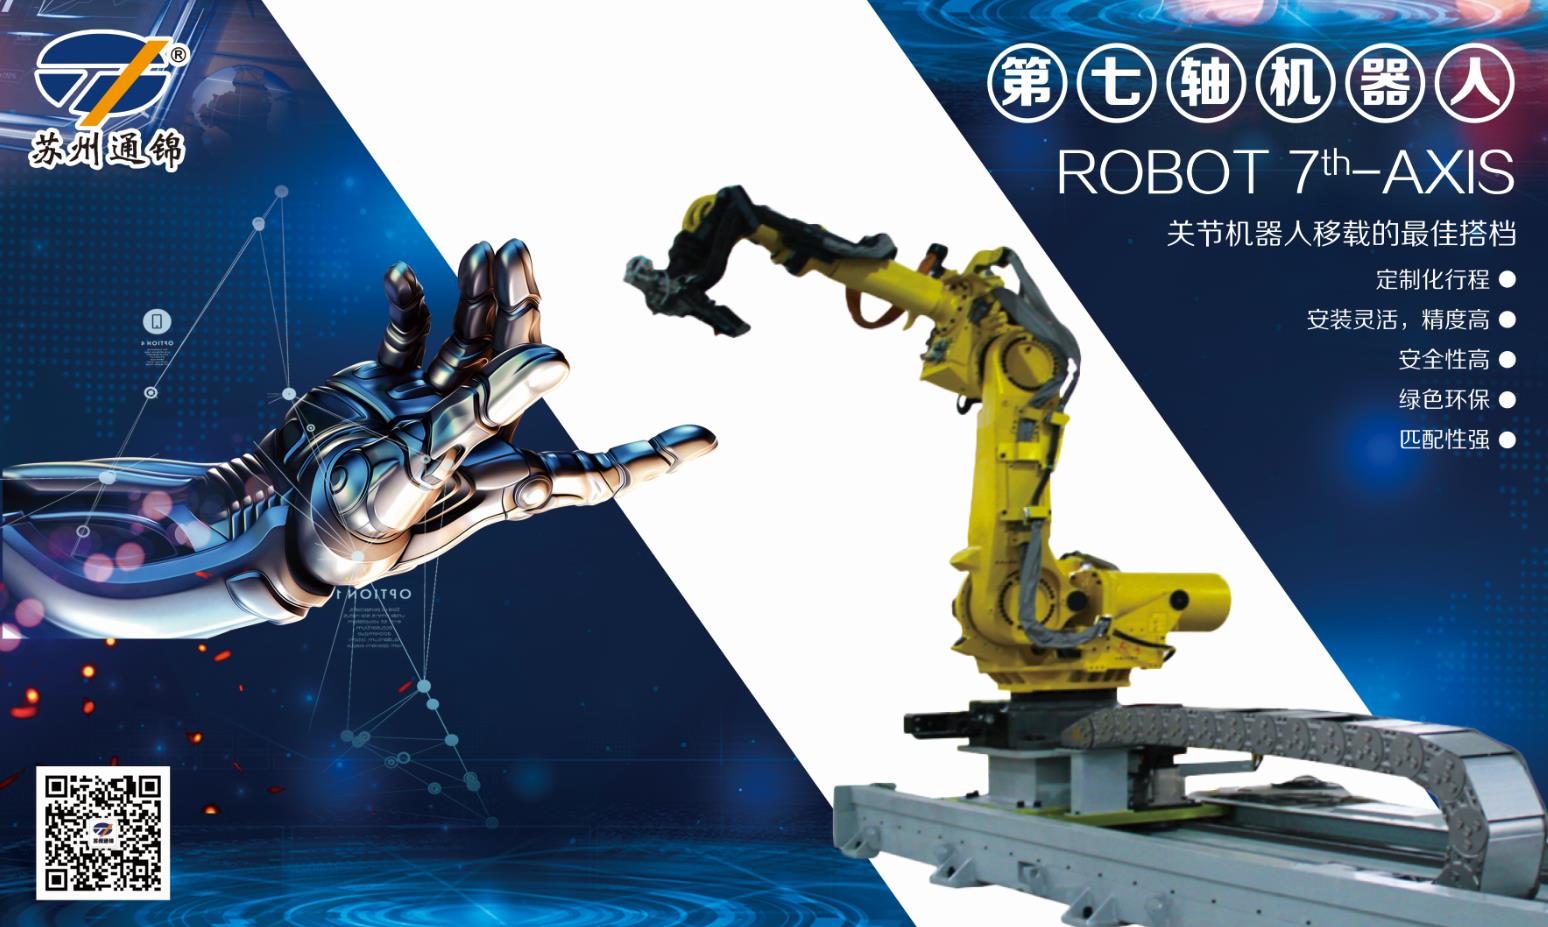 【展會專欄】2019中國工博會機器人展，我們蓄勢待發！